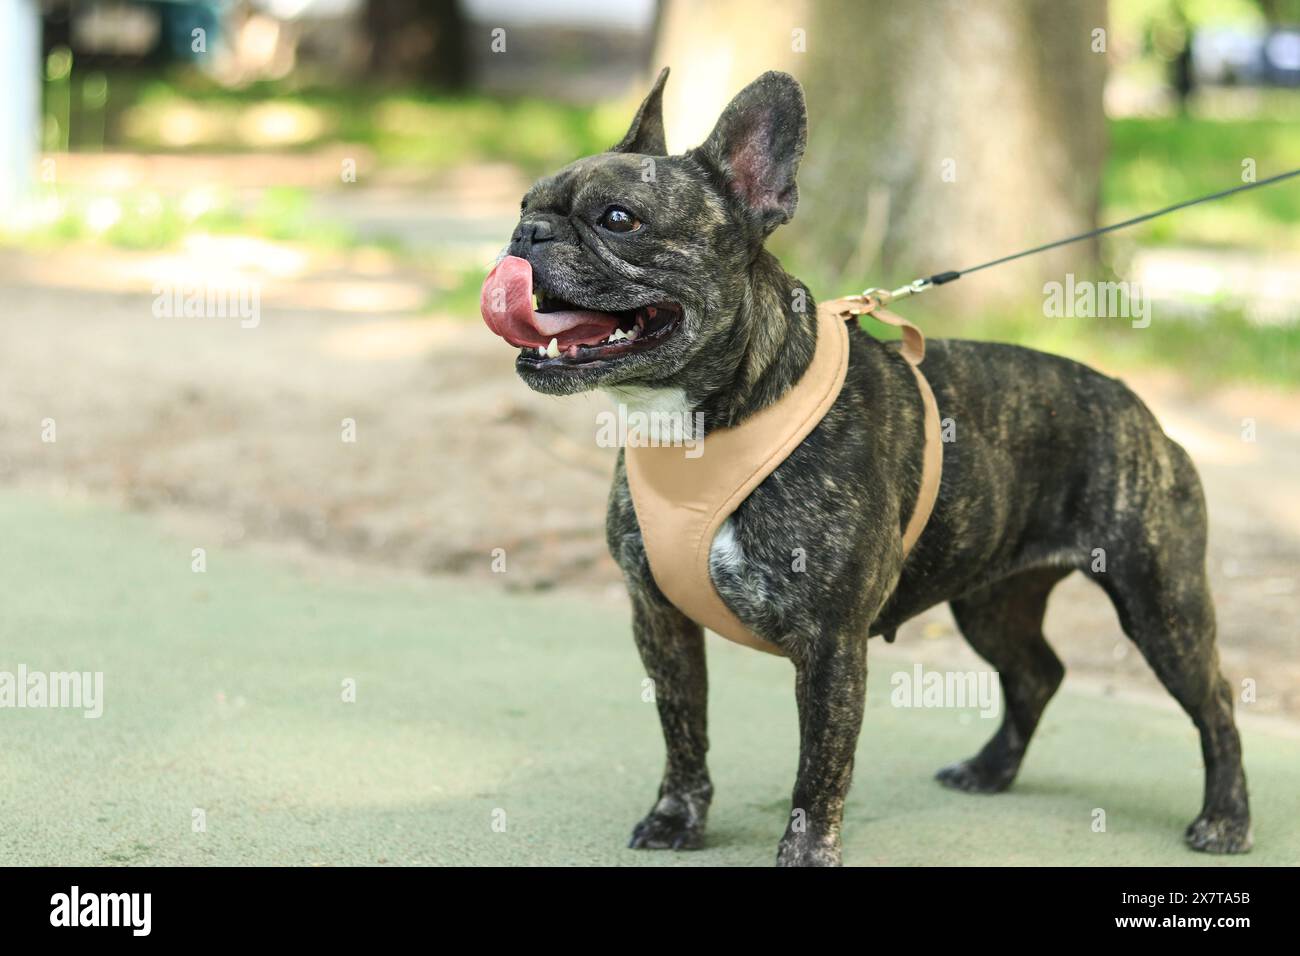 Französische Bulldogge auf einem Spaziergang. Hund in einem Gurtzeug. Bulldog dunkle Fellfarbe. Haustier. Junger Hund im Gurtzeug. Französische Bulldogge-Rasse, die an der Leine im Park läuft. W Stockfoto